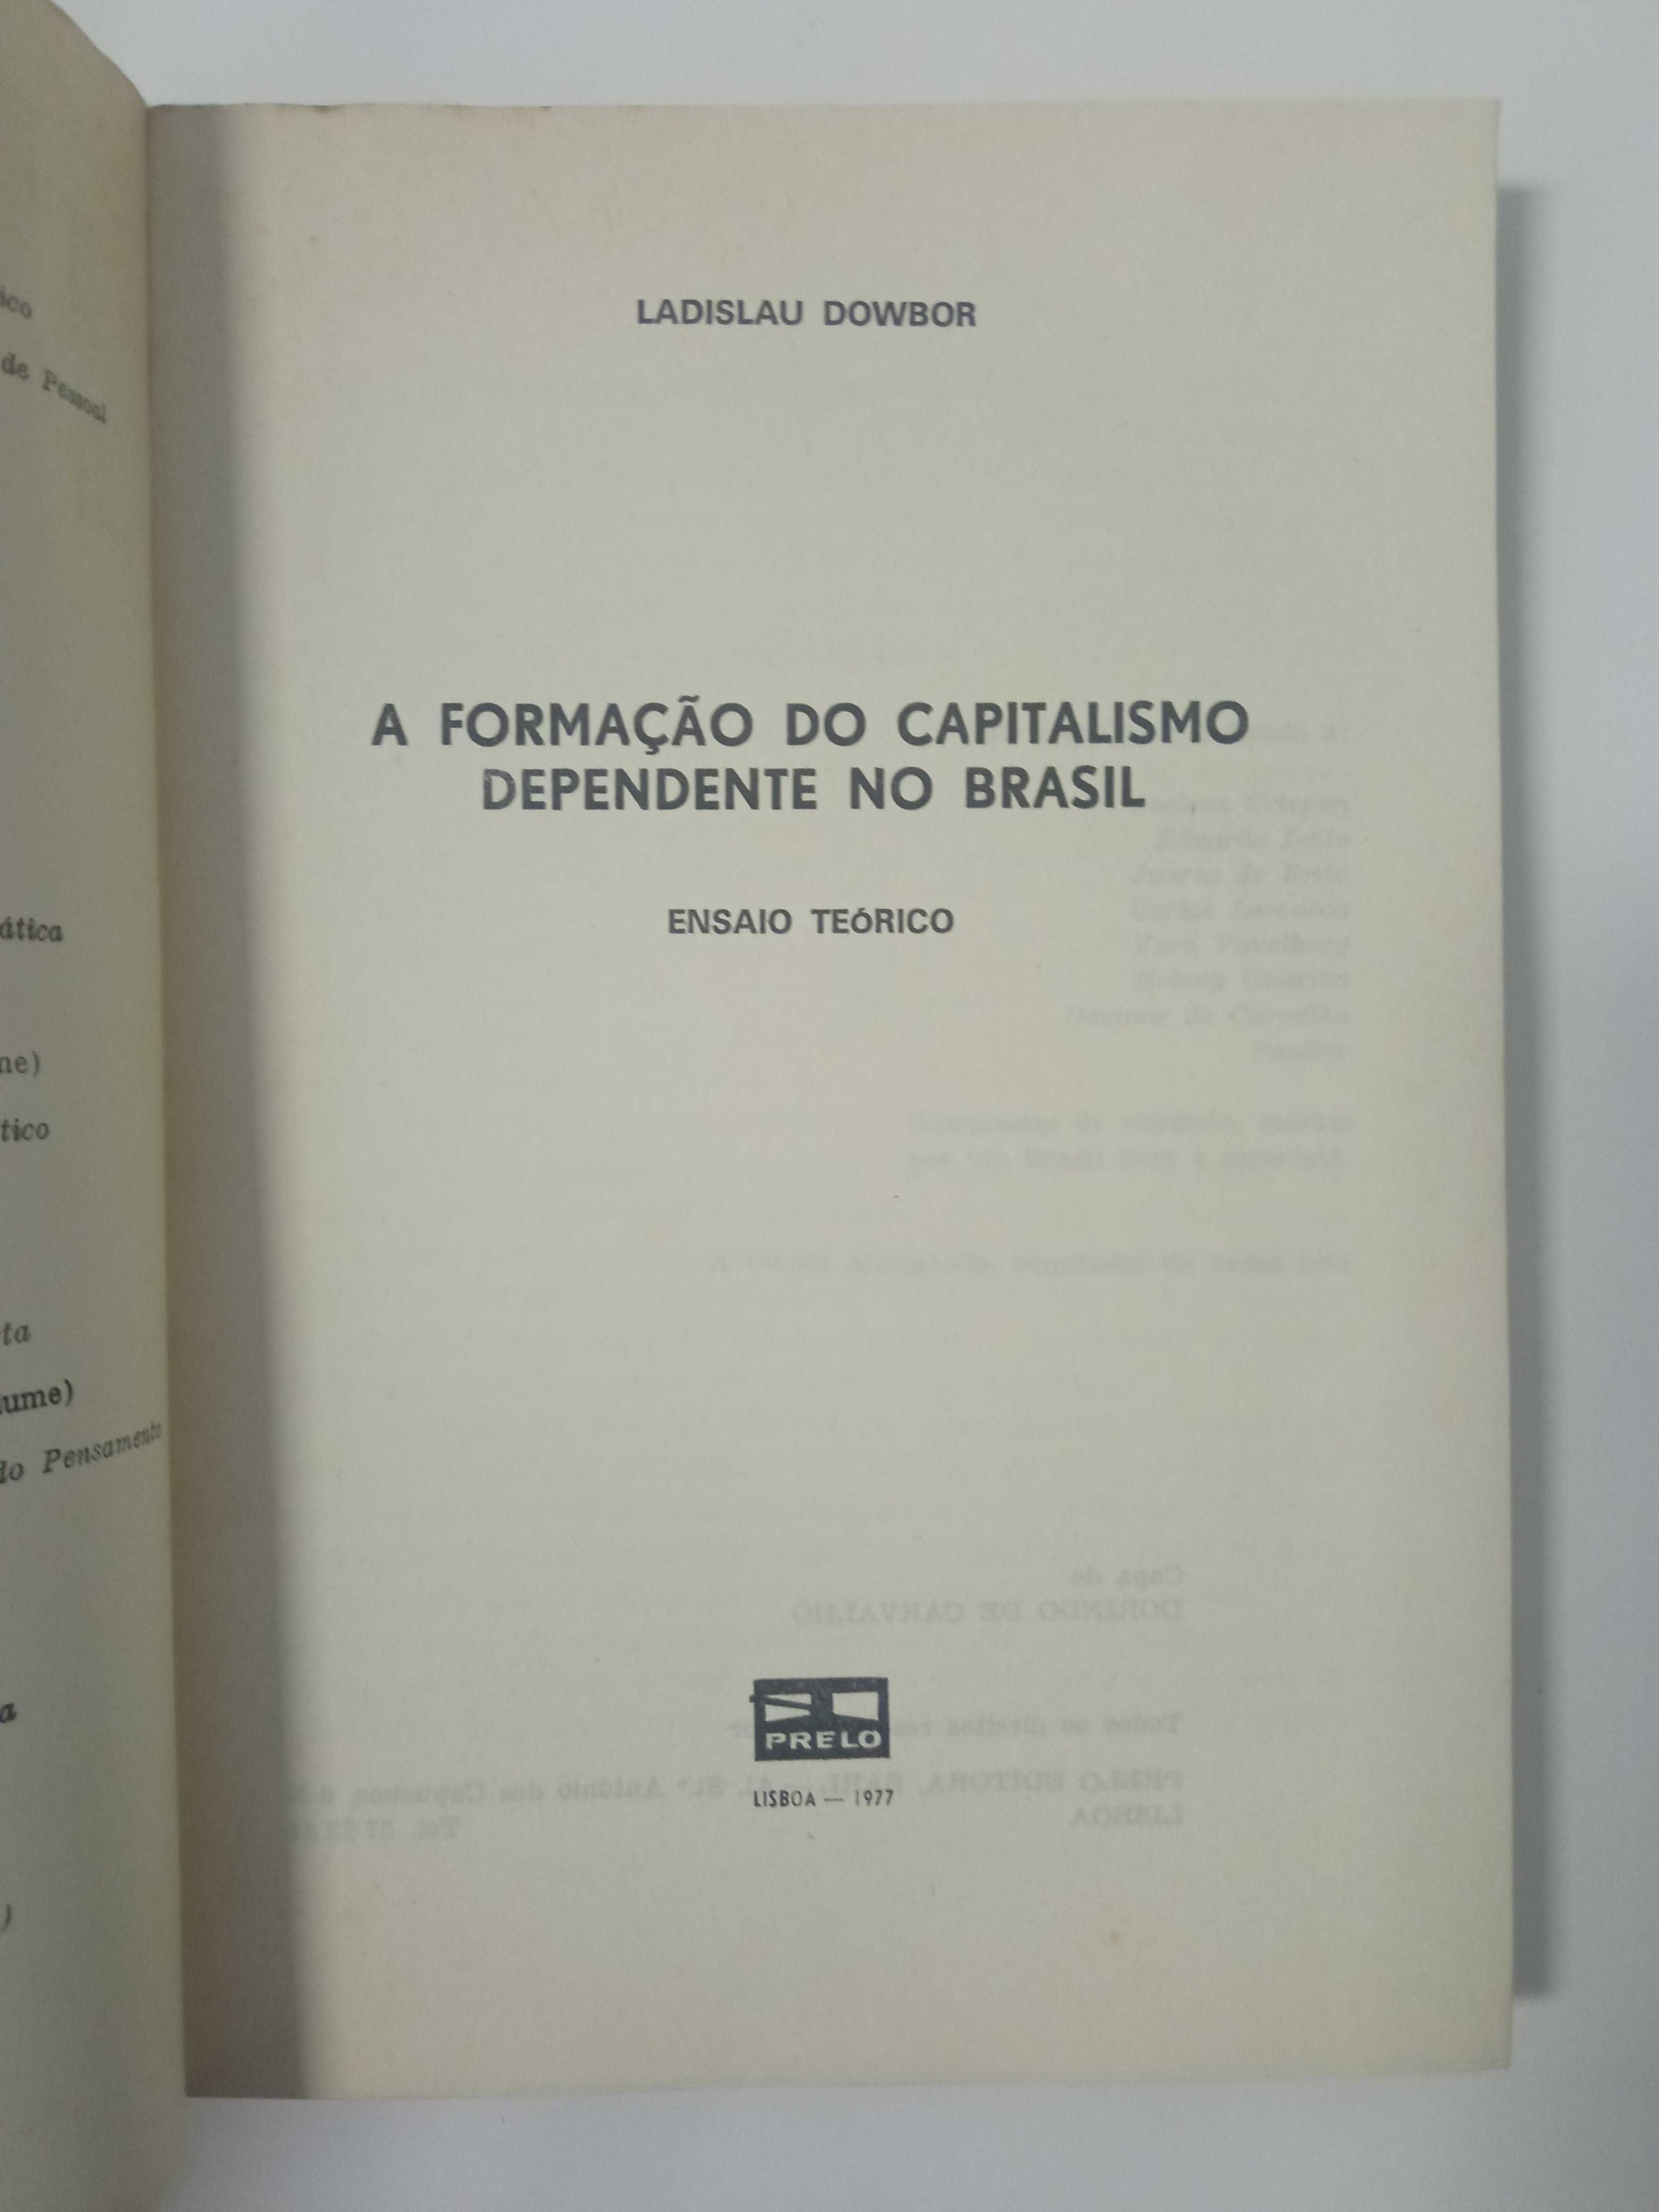 A formação do capitalismo depende no Brasil, de Ladislau Dowbor